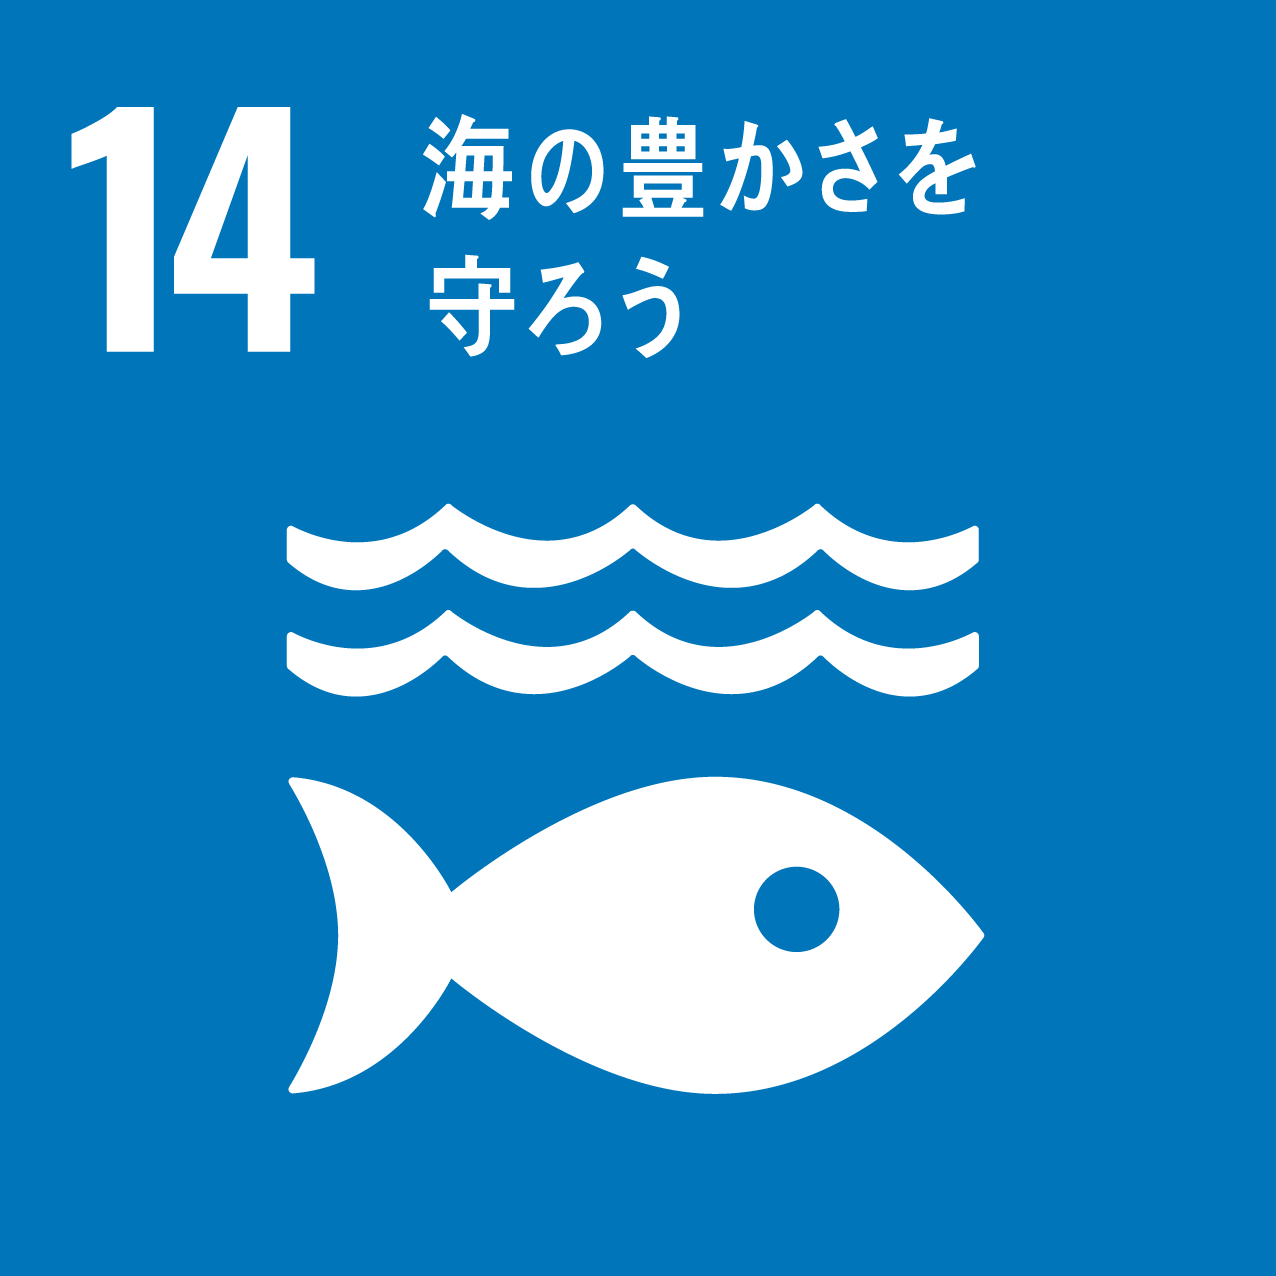 持続可能な開発目標（SDGs）-14「海の豊かさを守ろう 」とは